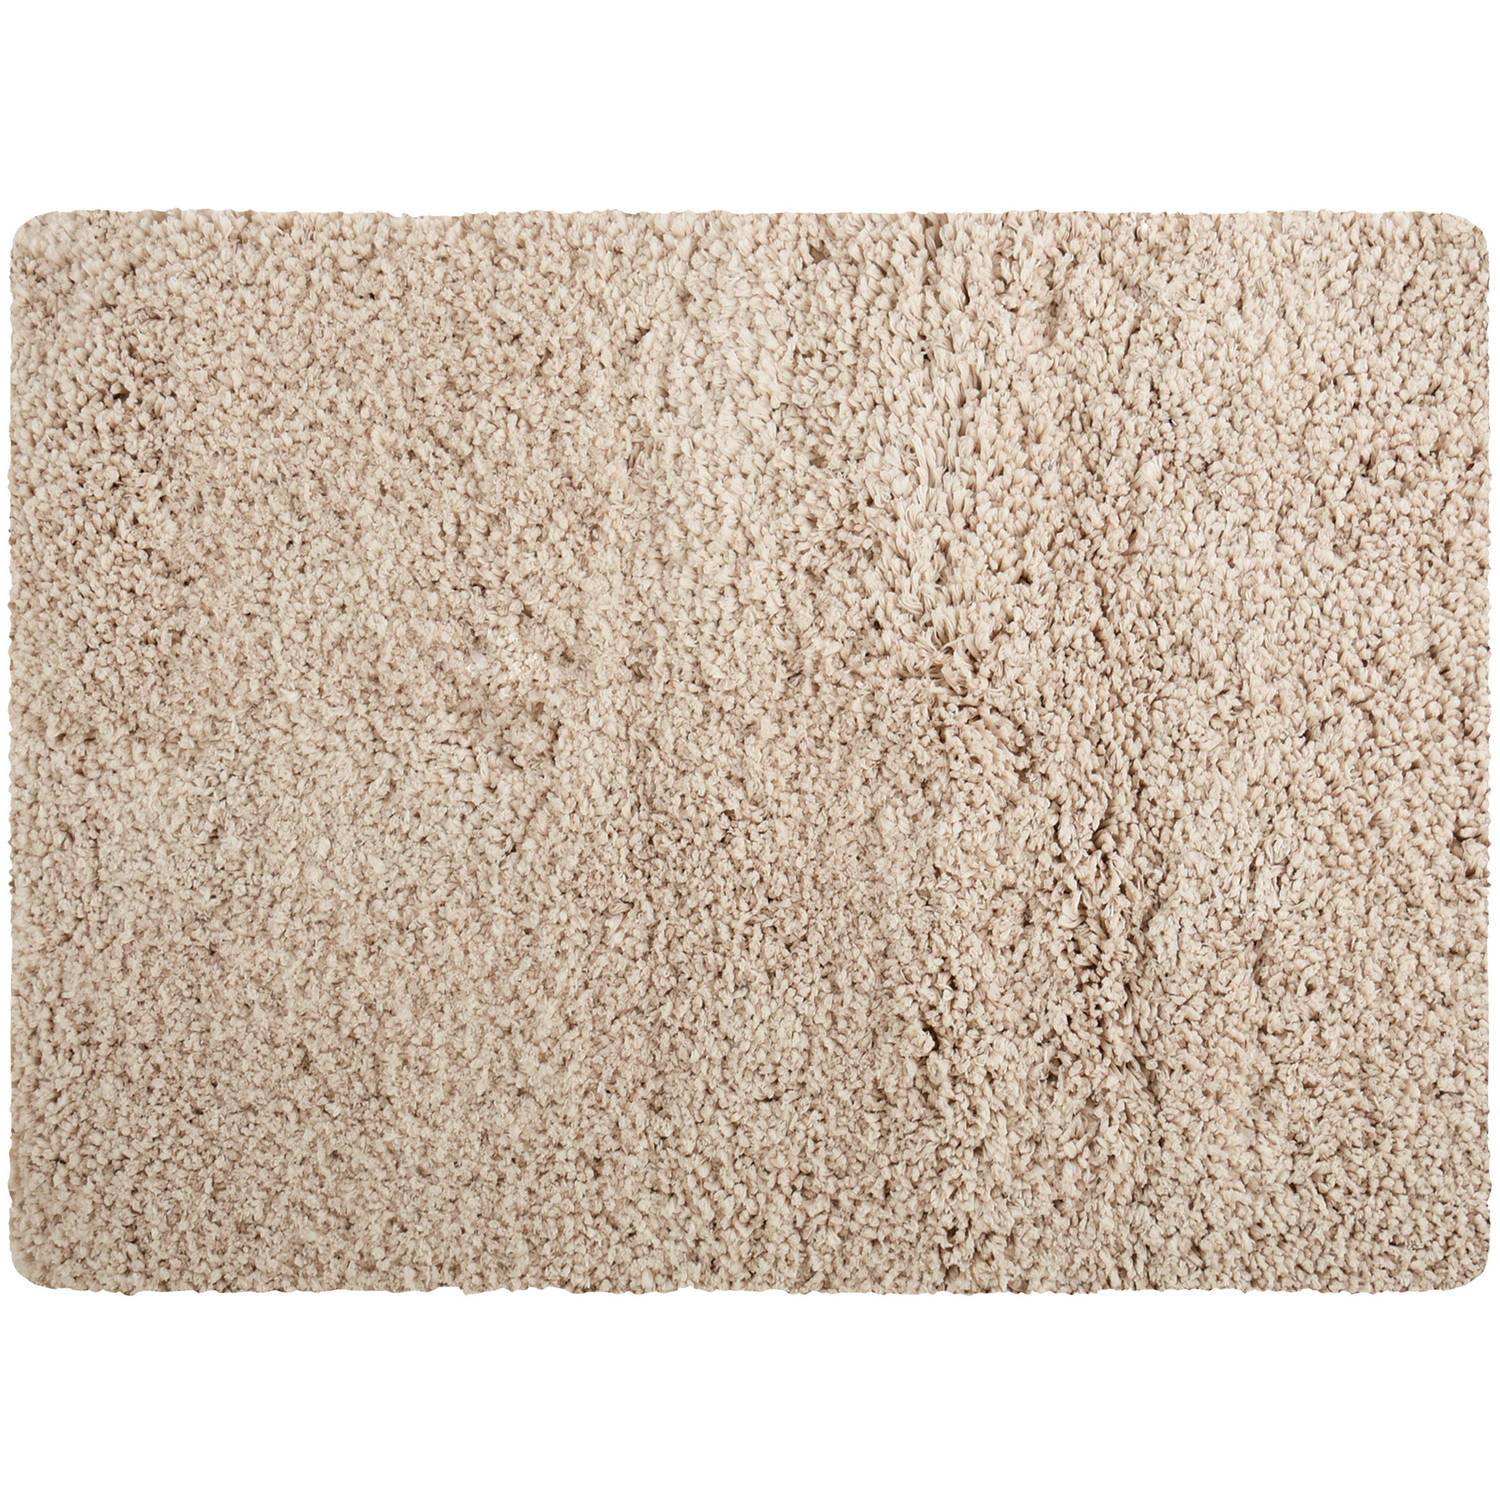 MSV Badkamerkleedje/badmat tapijt - voor de vloer - beige - 50 x 70 cm - Microfibre - langharig